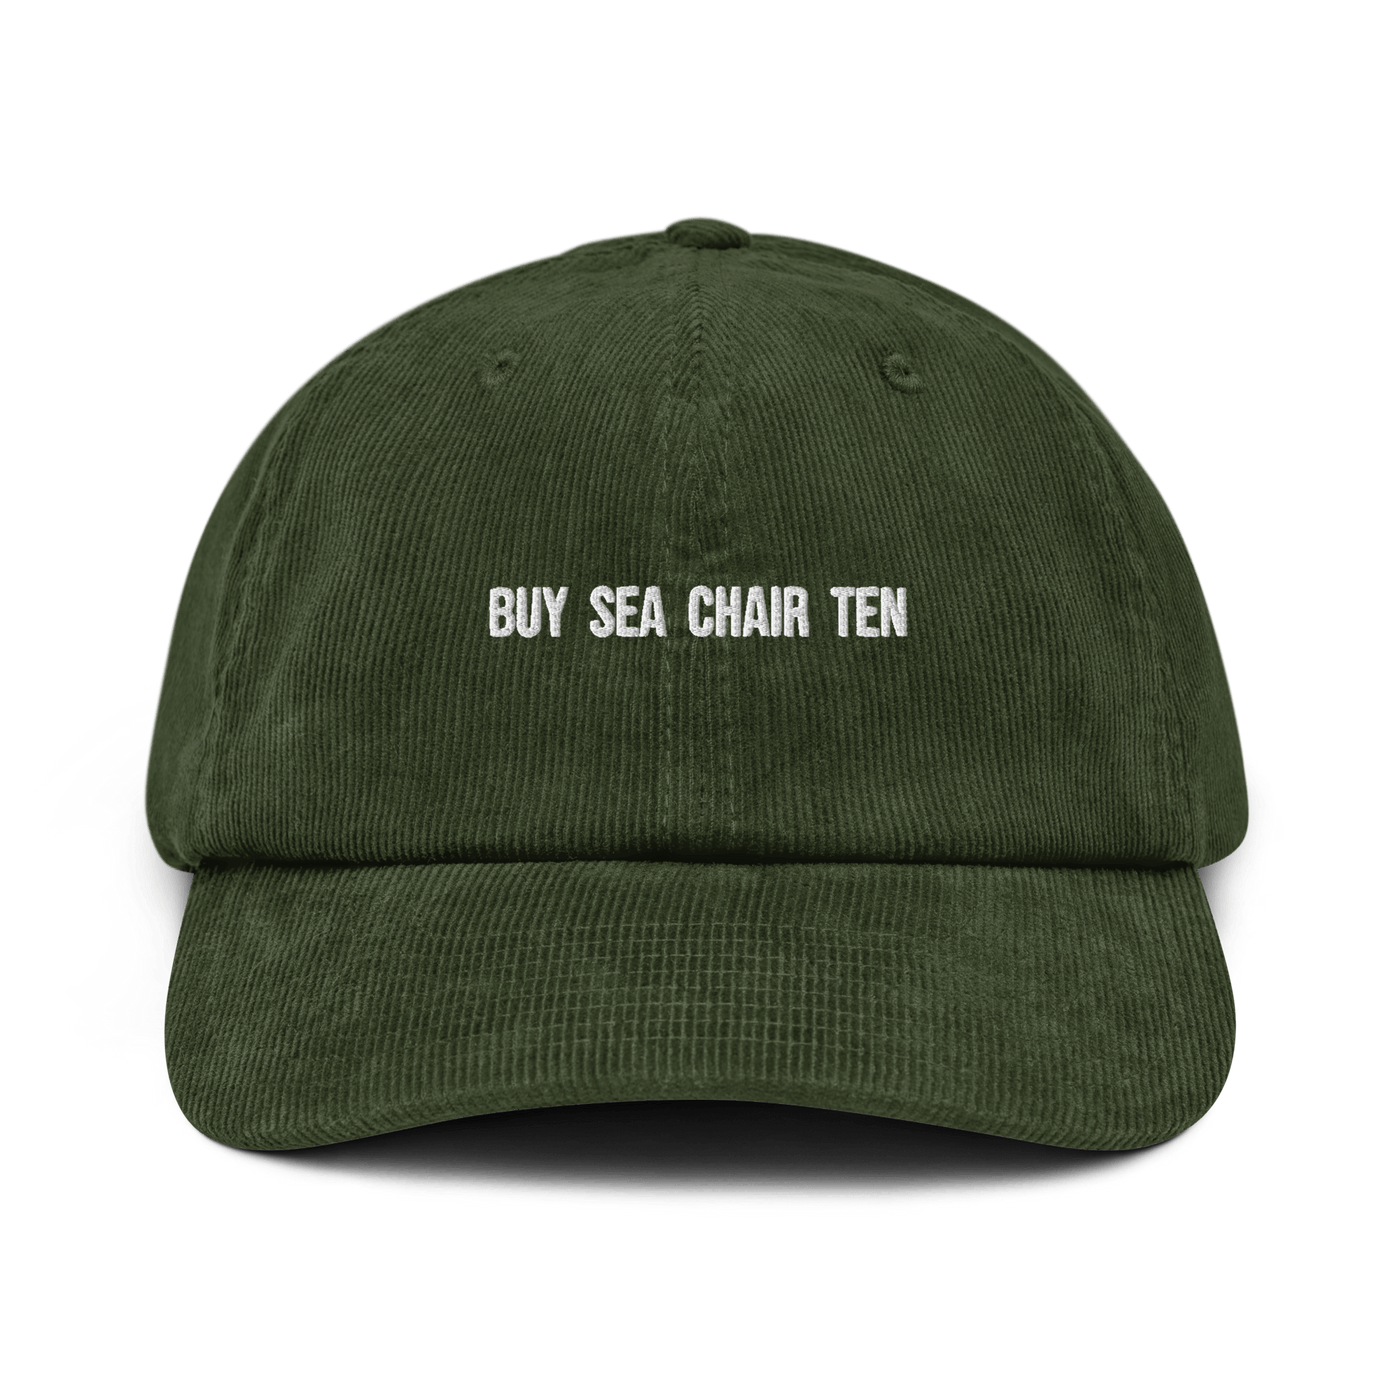 Buy Sea Chair Ten Corduroy hat - Dark Olive - - Just Another Cap Store